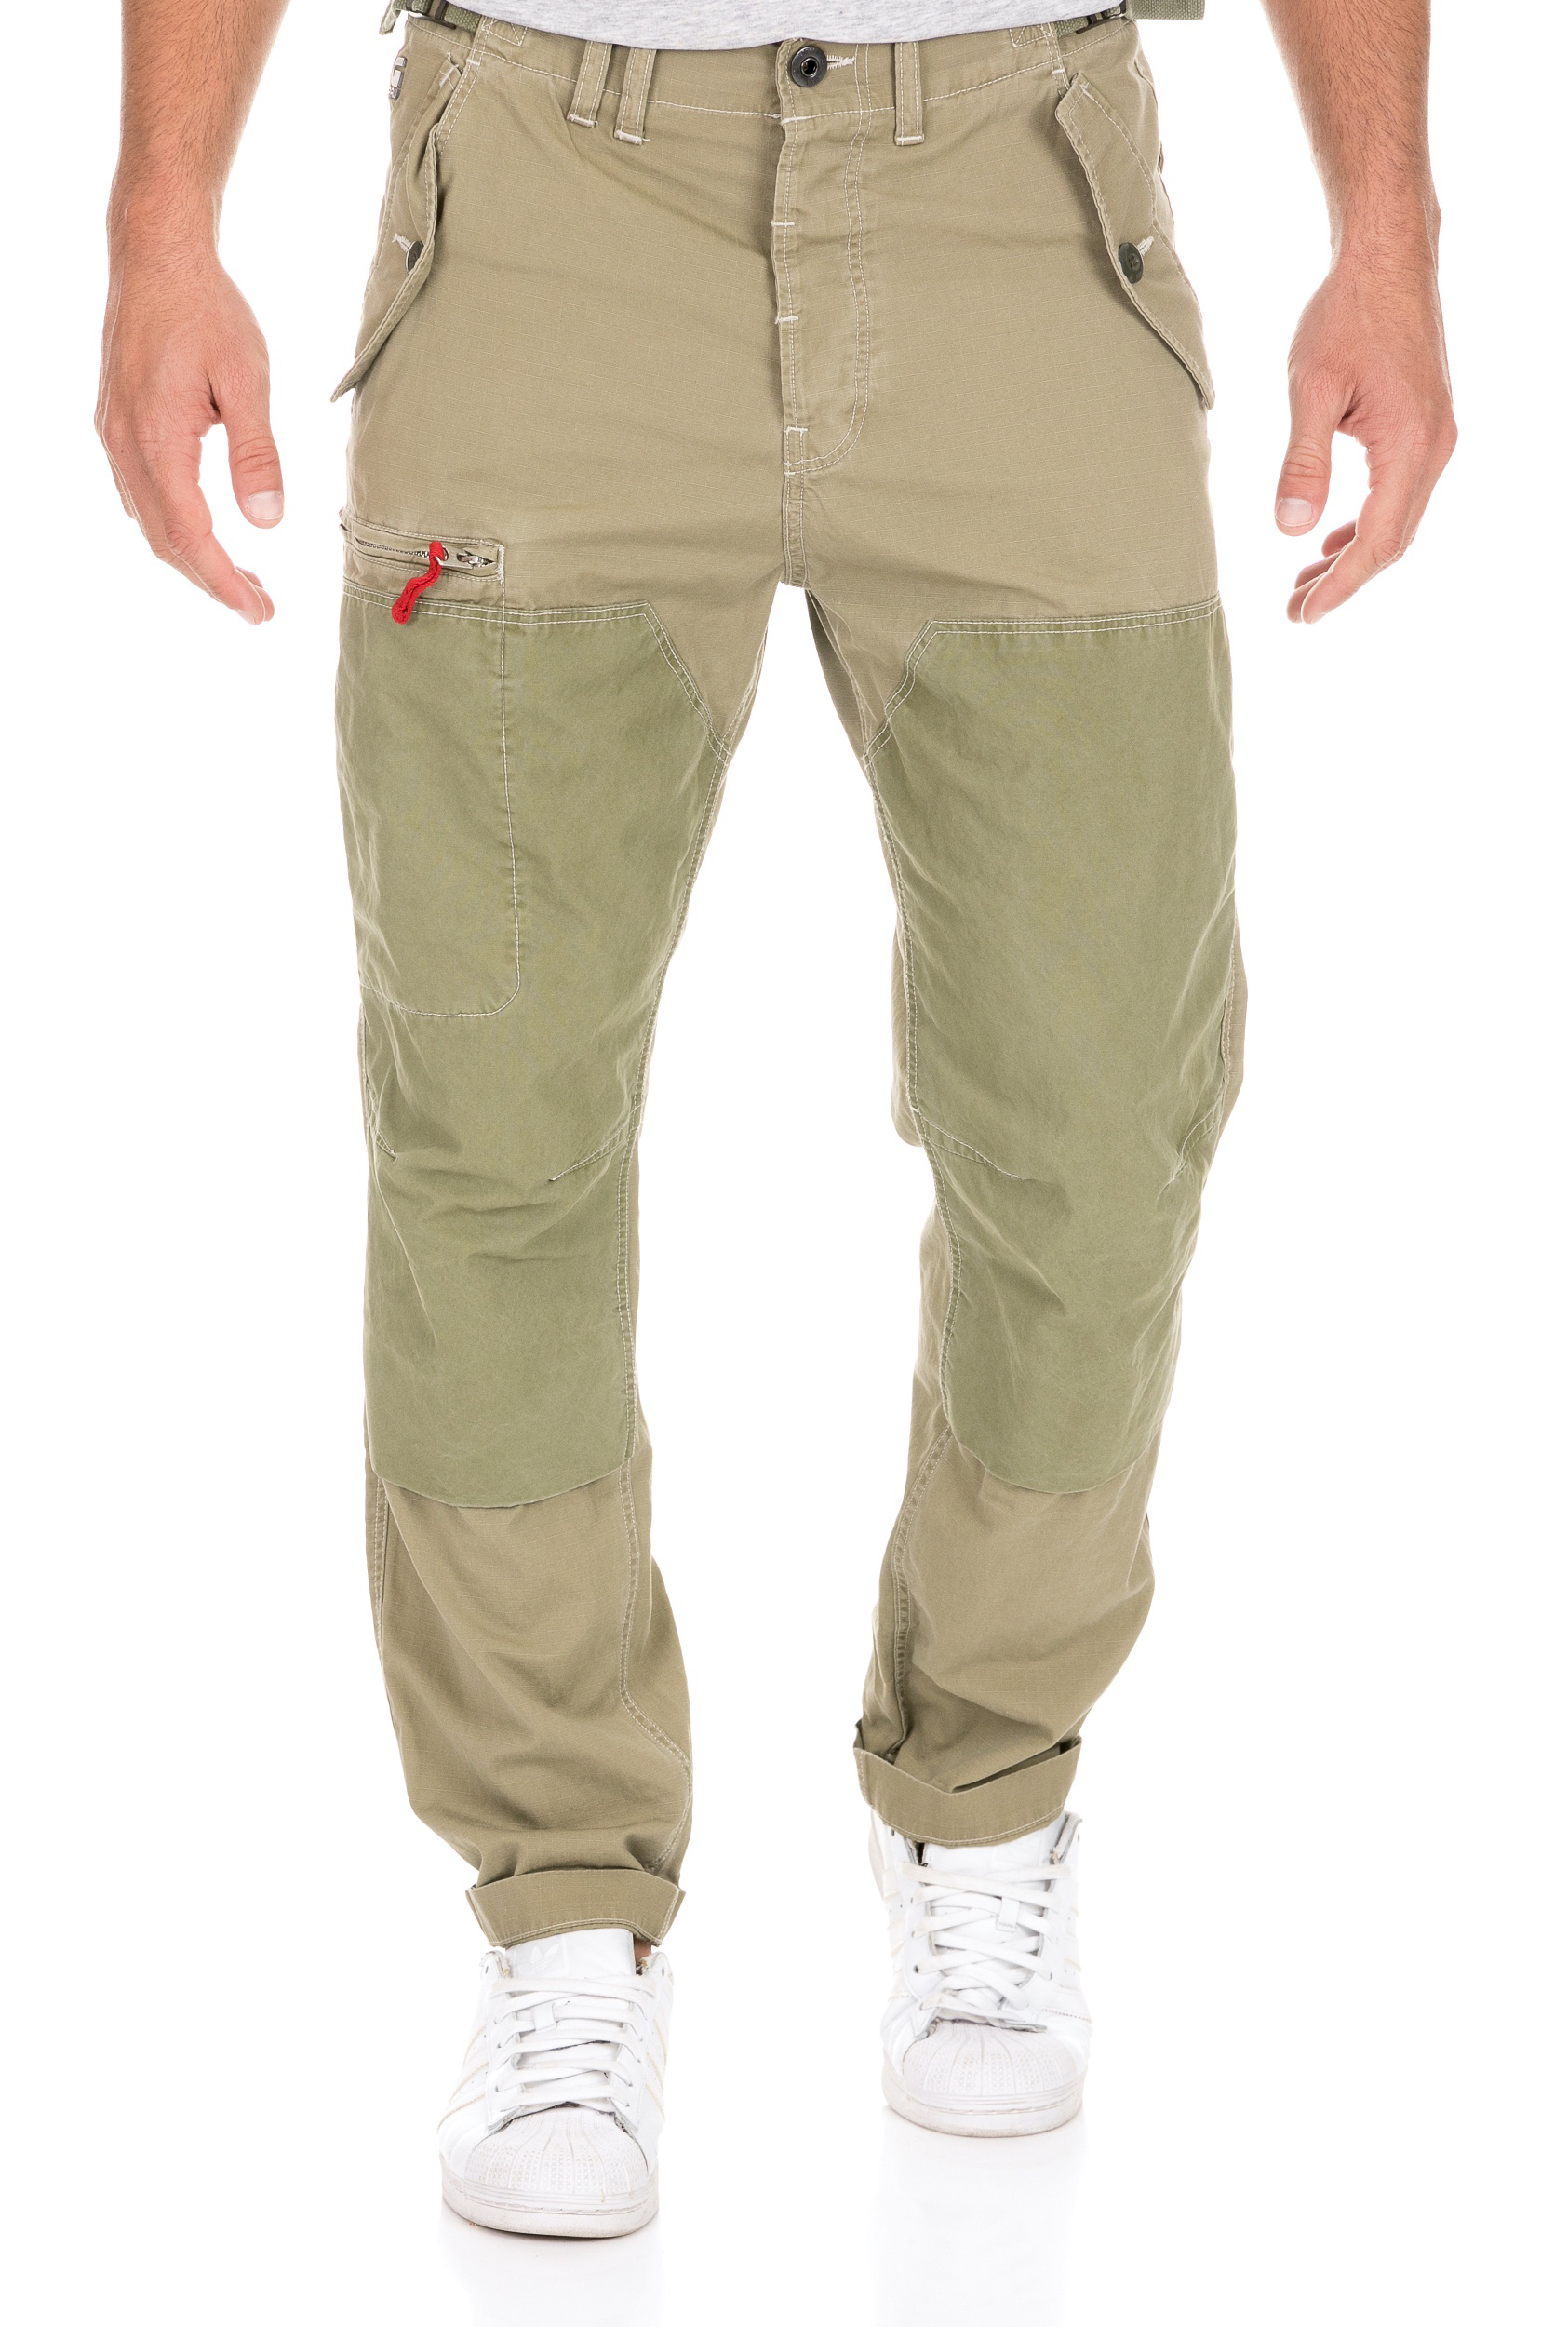 Ανδρικά/Ρούχα/Παντελόνια/Cargo G-STAR - Ανδρικό παντελόνι G-STAR TORBIN χακί